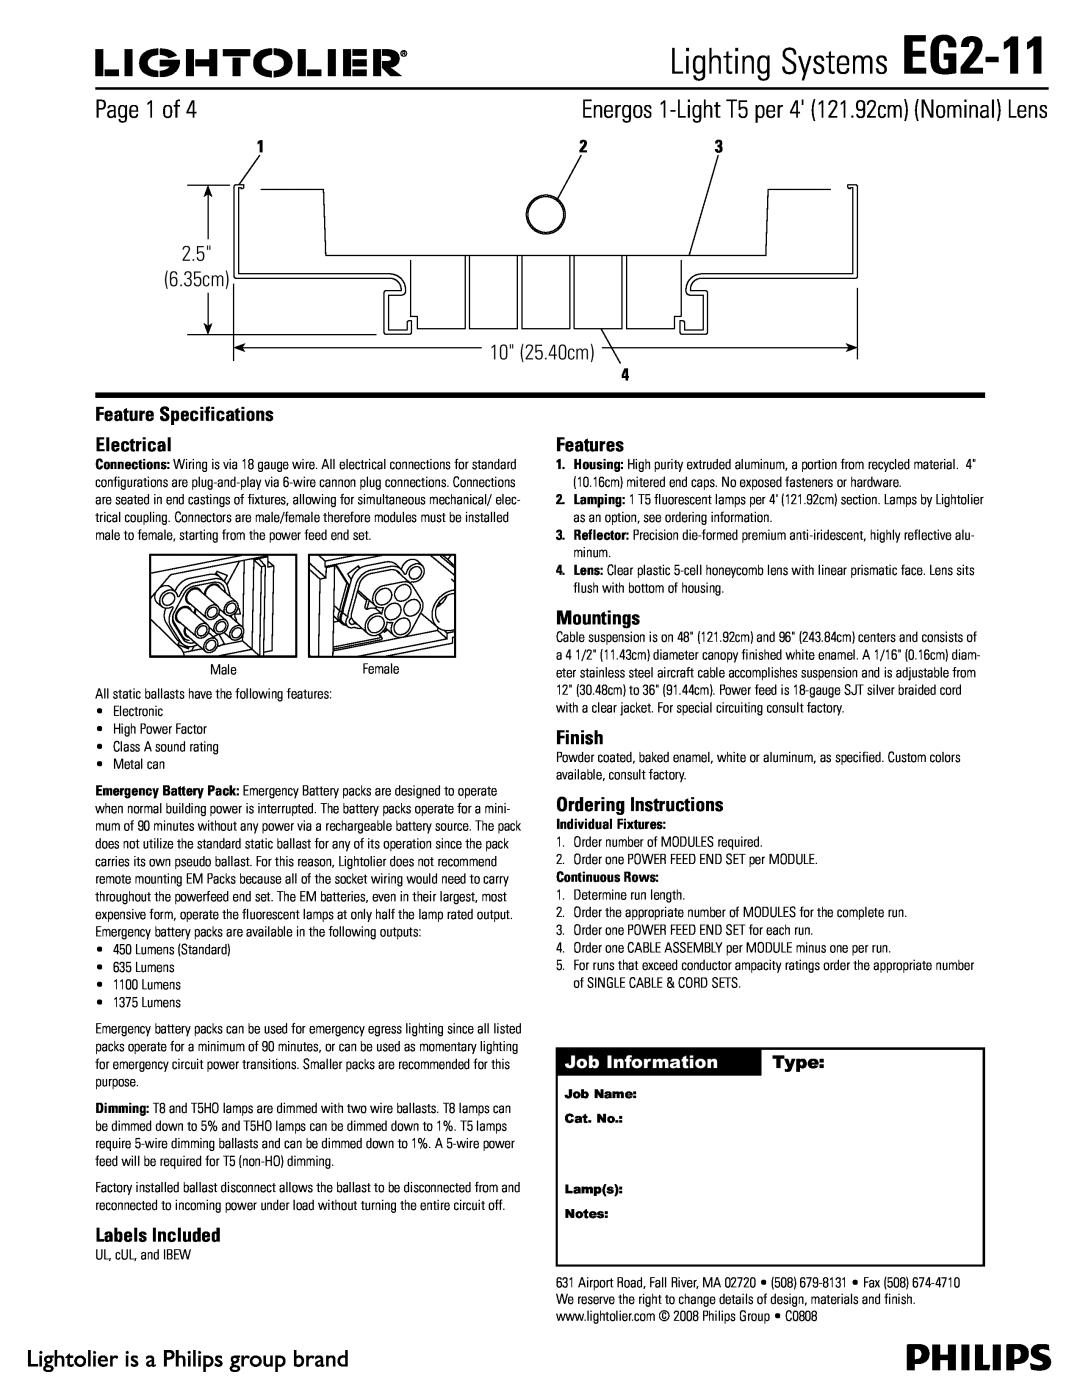 Lightolier specifications Lighting Systems EG2-11,  Dn  Dn, Job Information, Type 